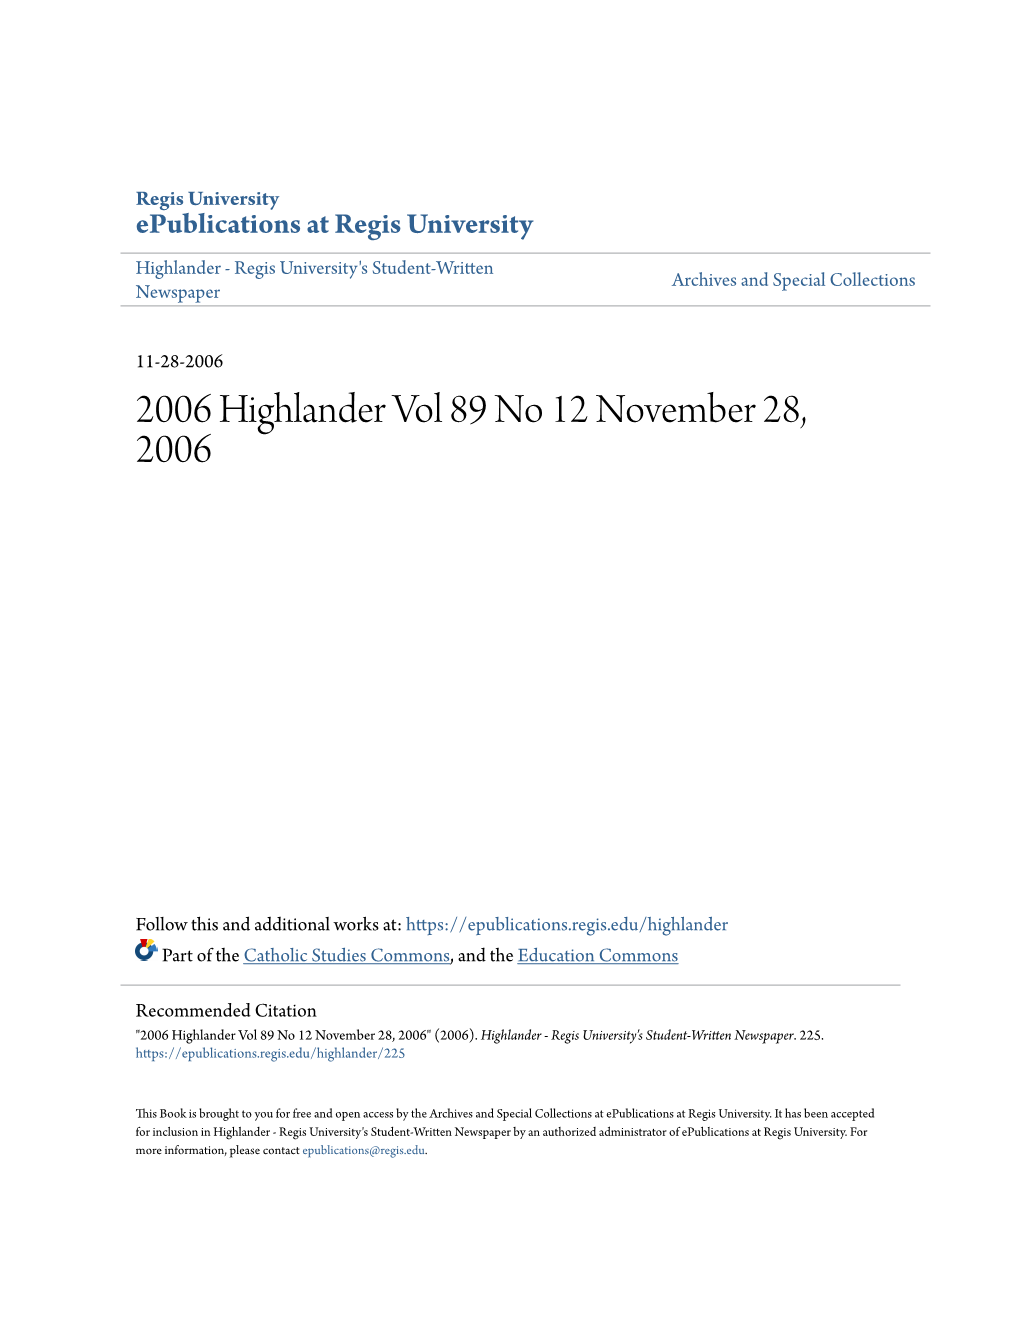 2006 Highlander Vol 89 No 12 November 28, 2006